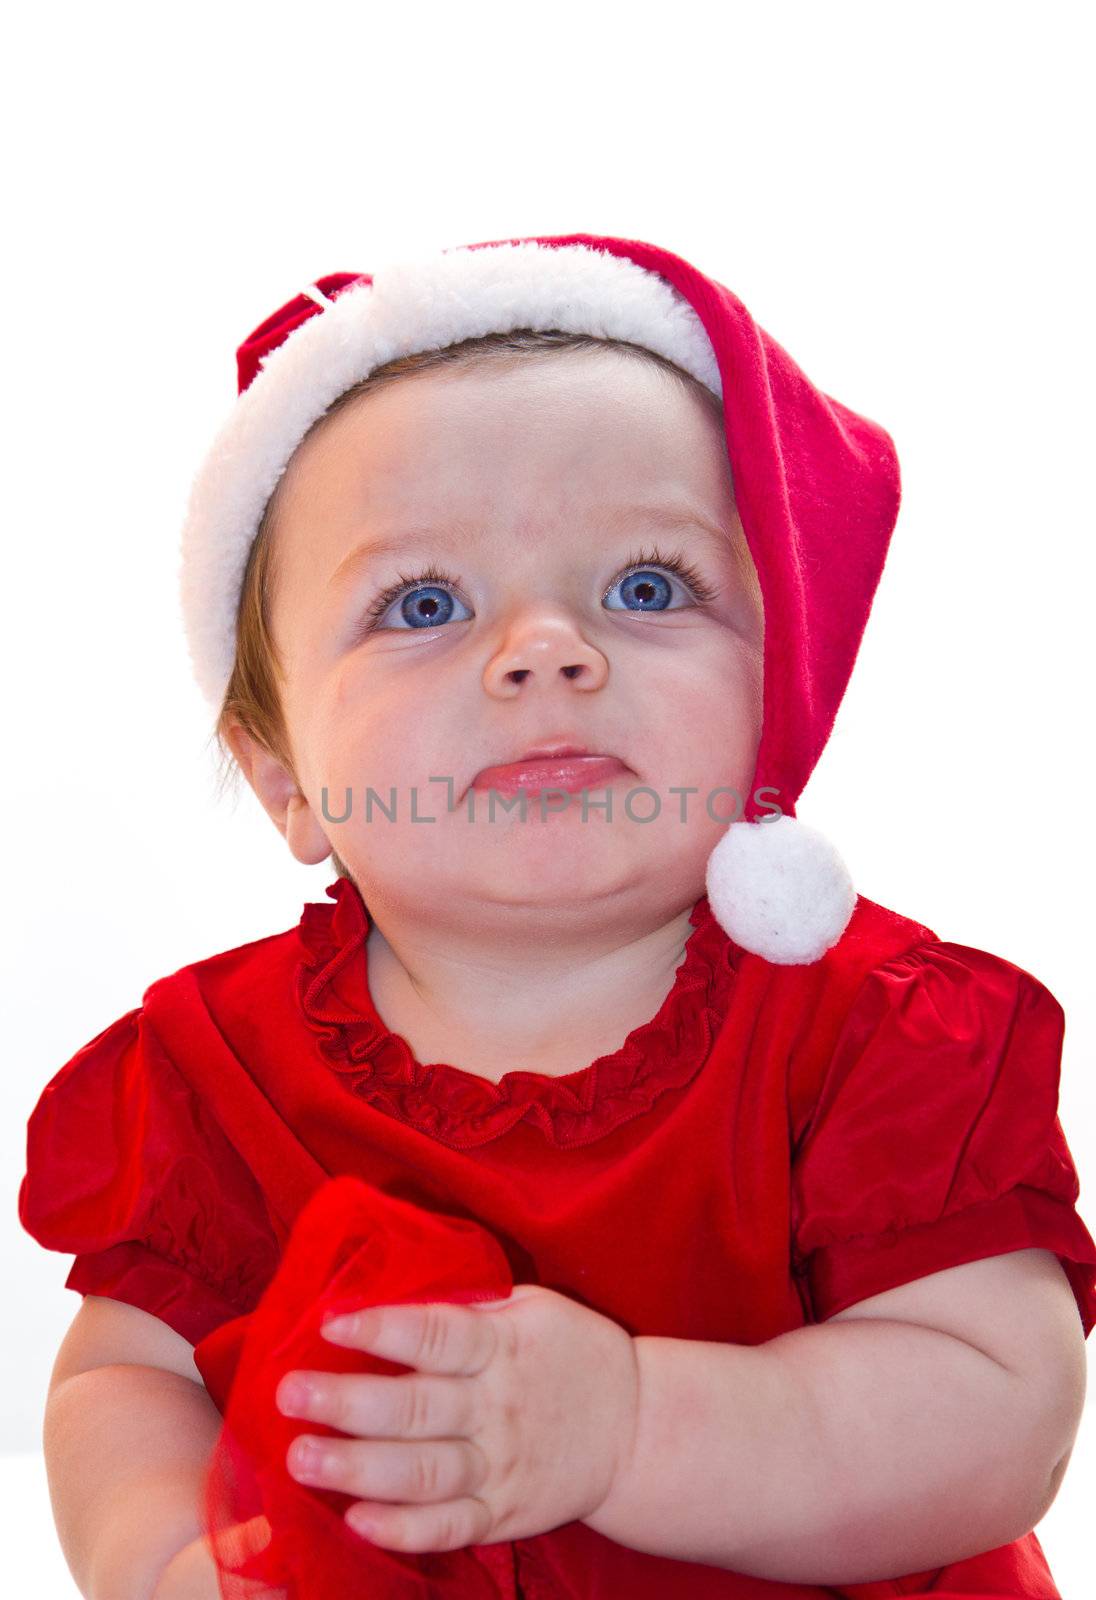 crawling Santa Claus baby girl  by lsantilli